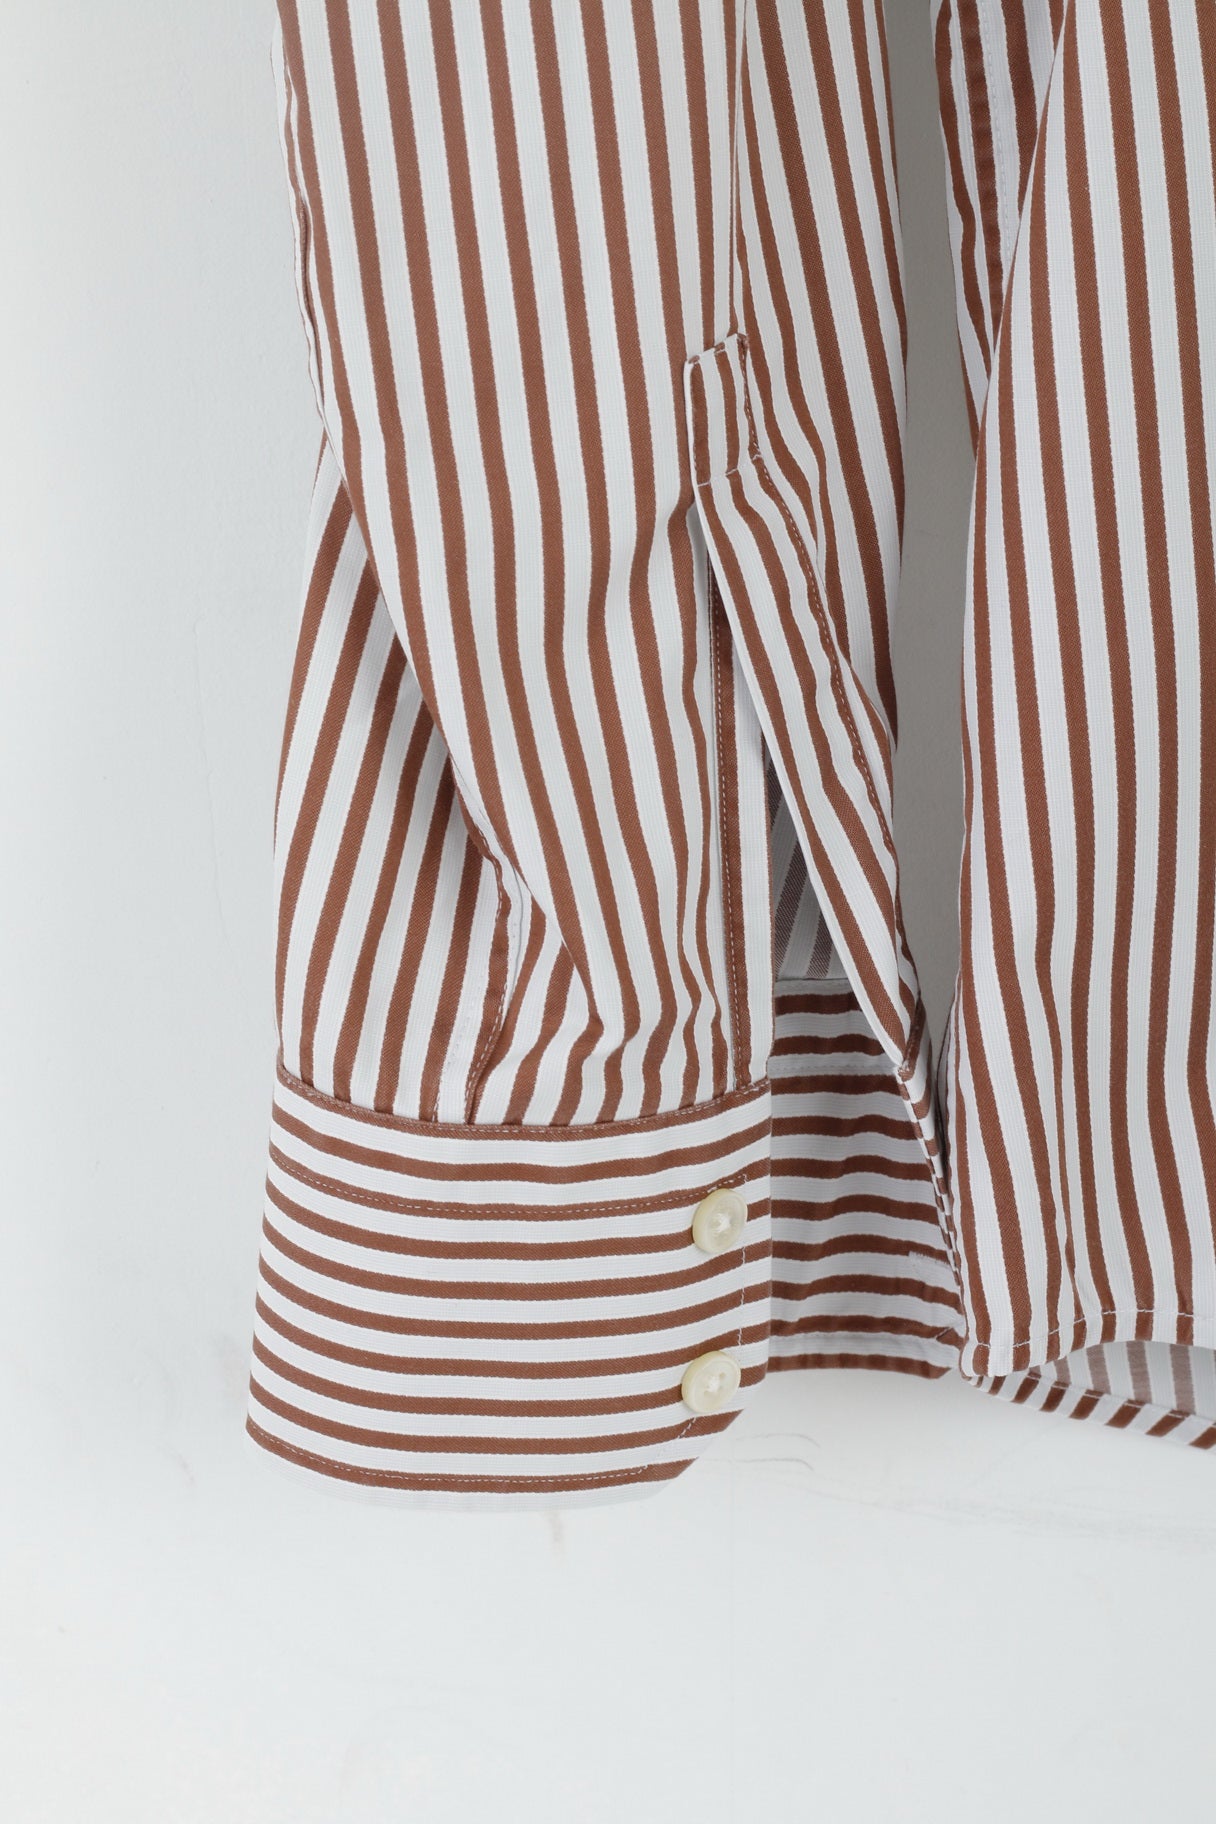 Hugo Boss Camicia casual da uomo 42 16,5 L Top regolare a maniche lunghe in cotone a righe marrone